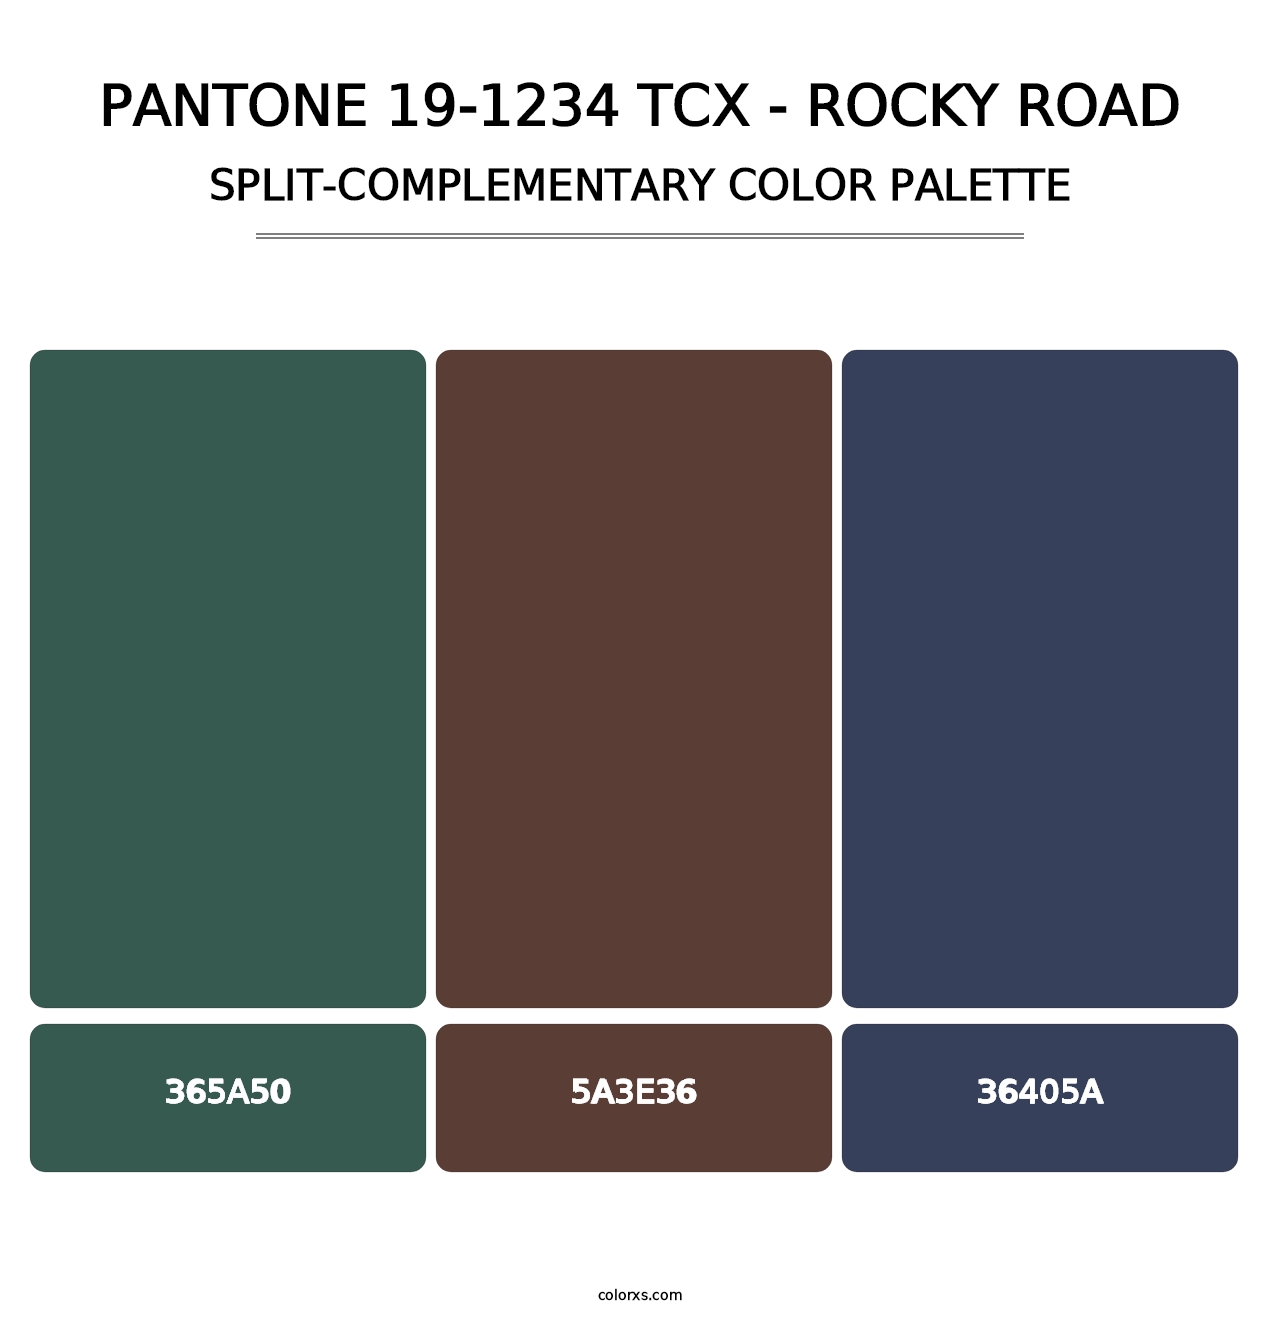 PANTONE 19-1234 TCX - Rocky Road - Split-Complementary Color Palette